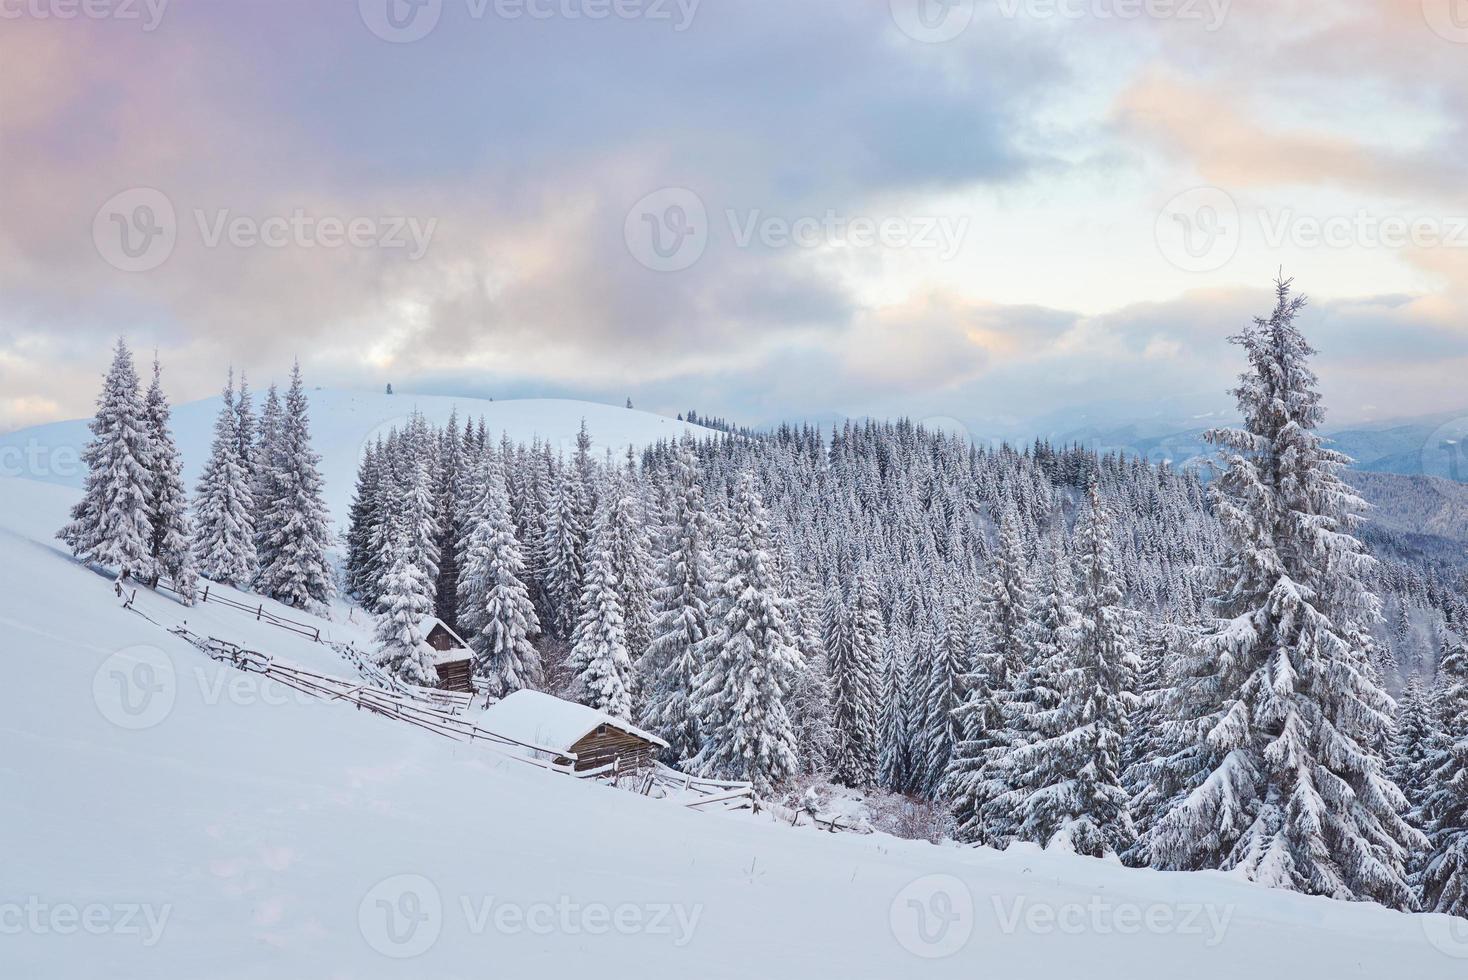 cabana de madeira aconchegante no alto das montanhas nevadas. grandes pinheiros no fundo. pastor kolyba abandonado. dia nublado. montanhas dos cárpatos, ucrânia, europa foto